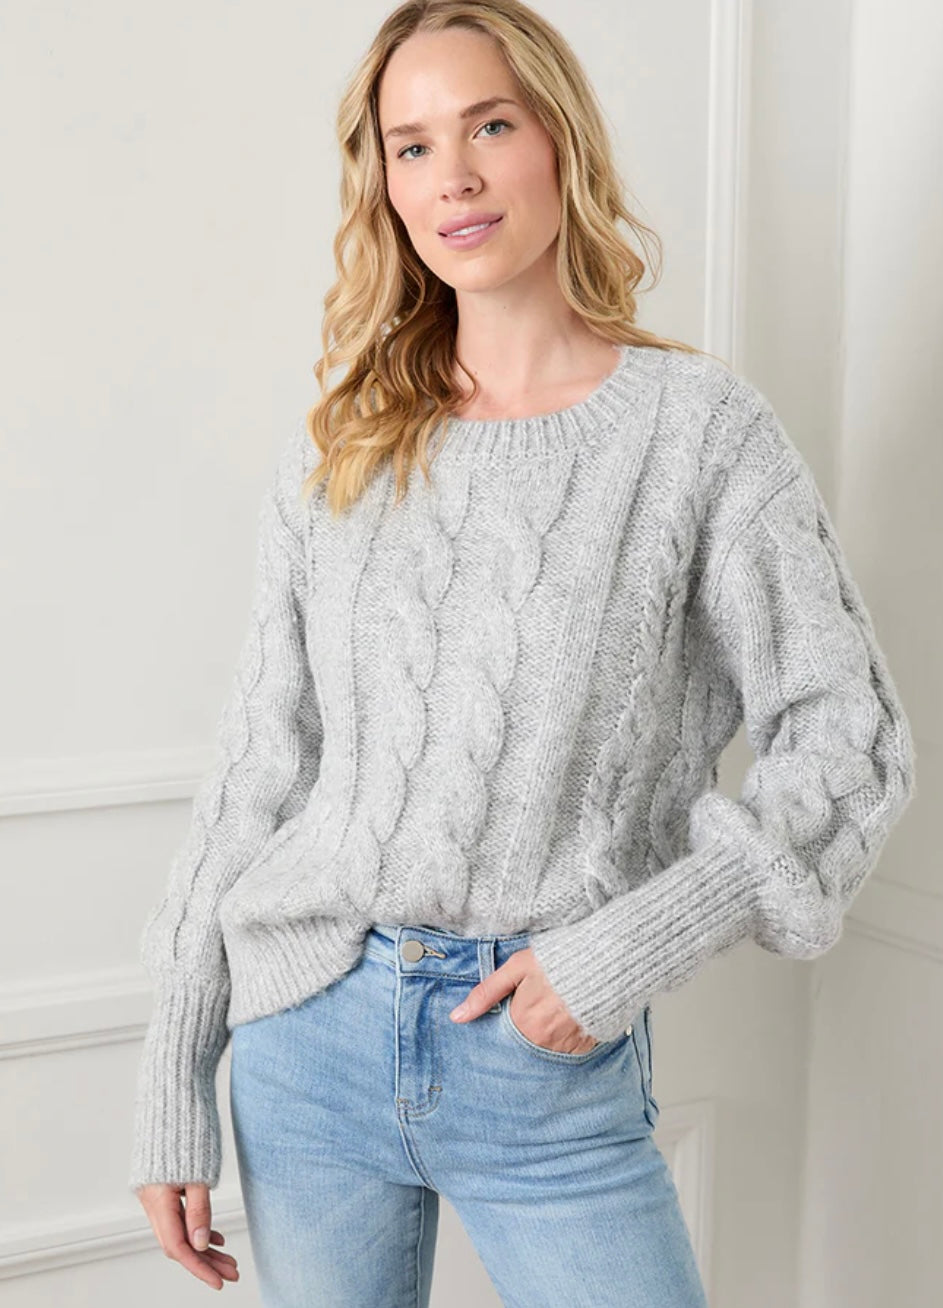 Karen Kane Cable Sweater